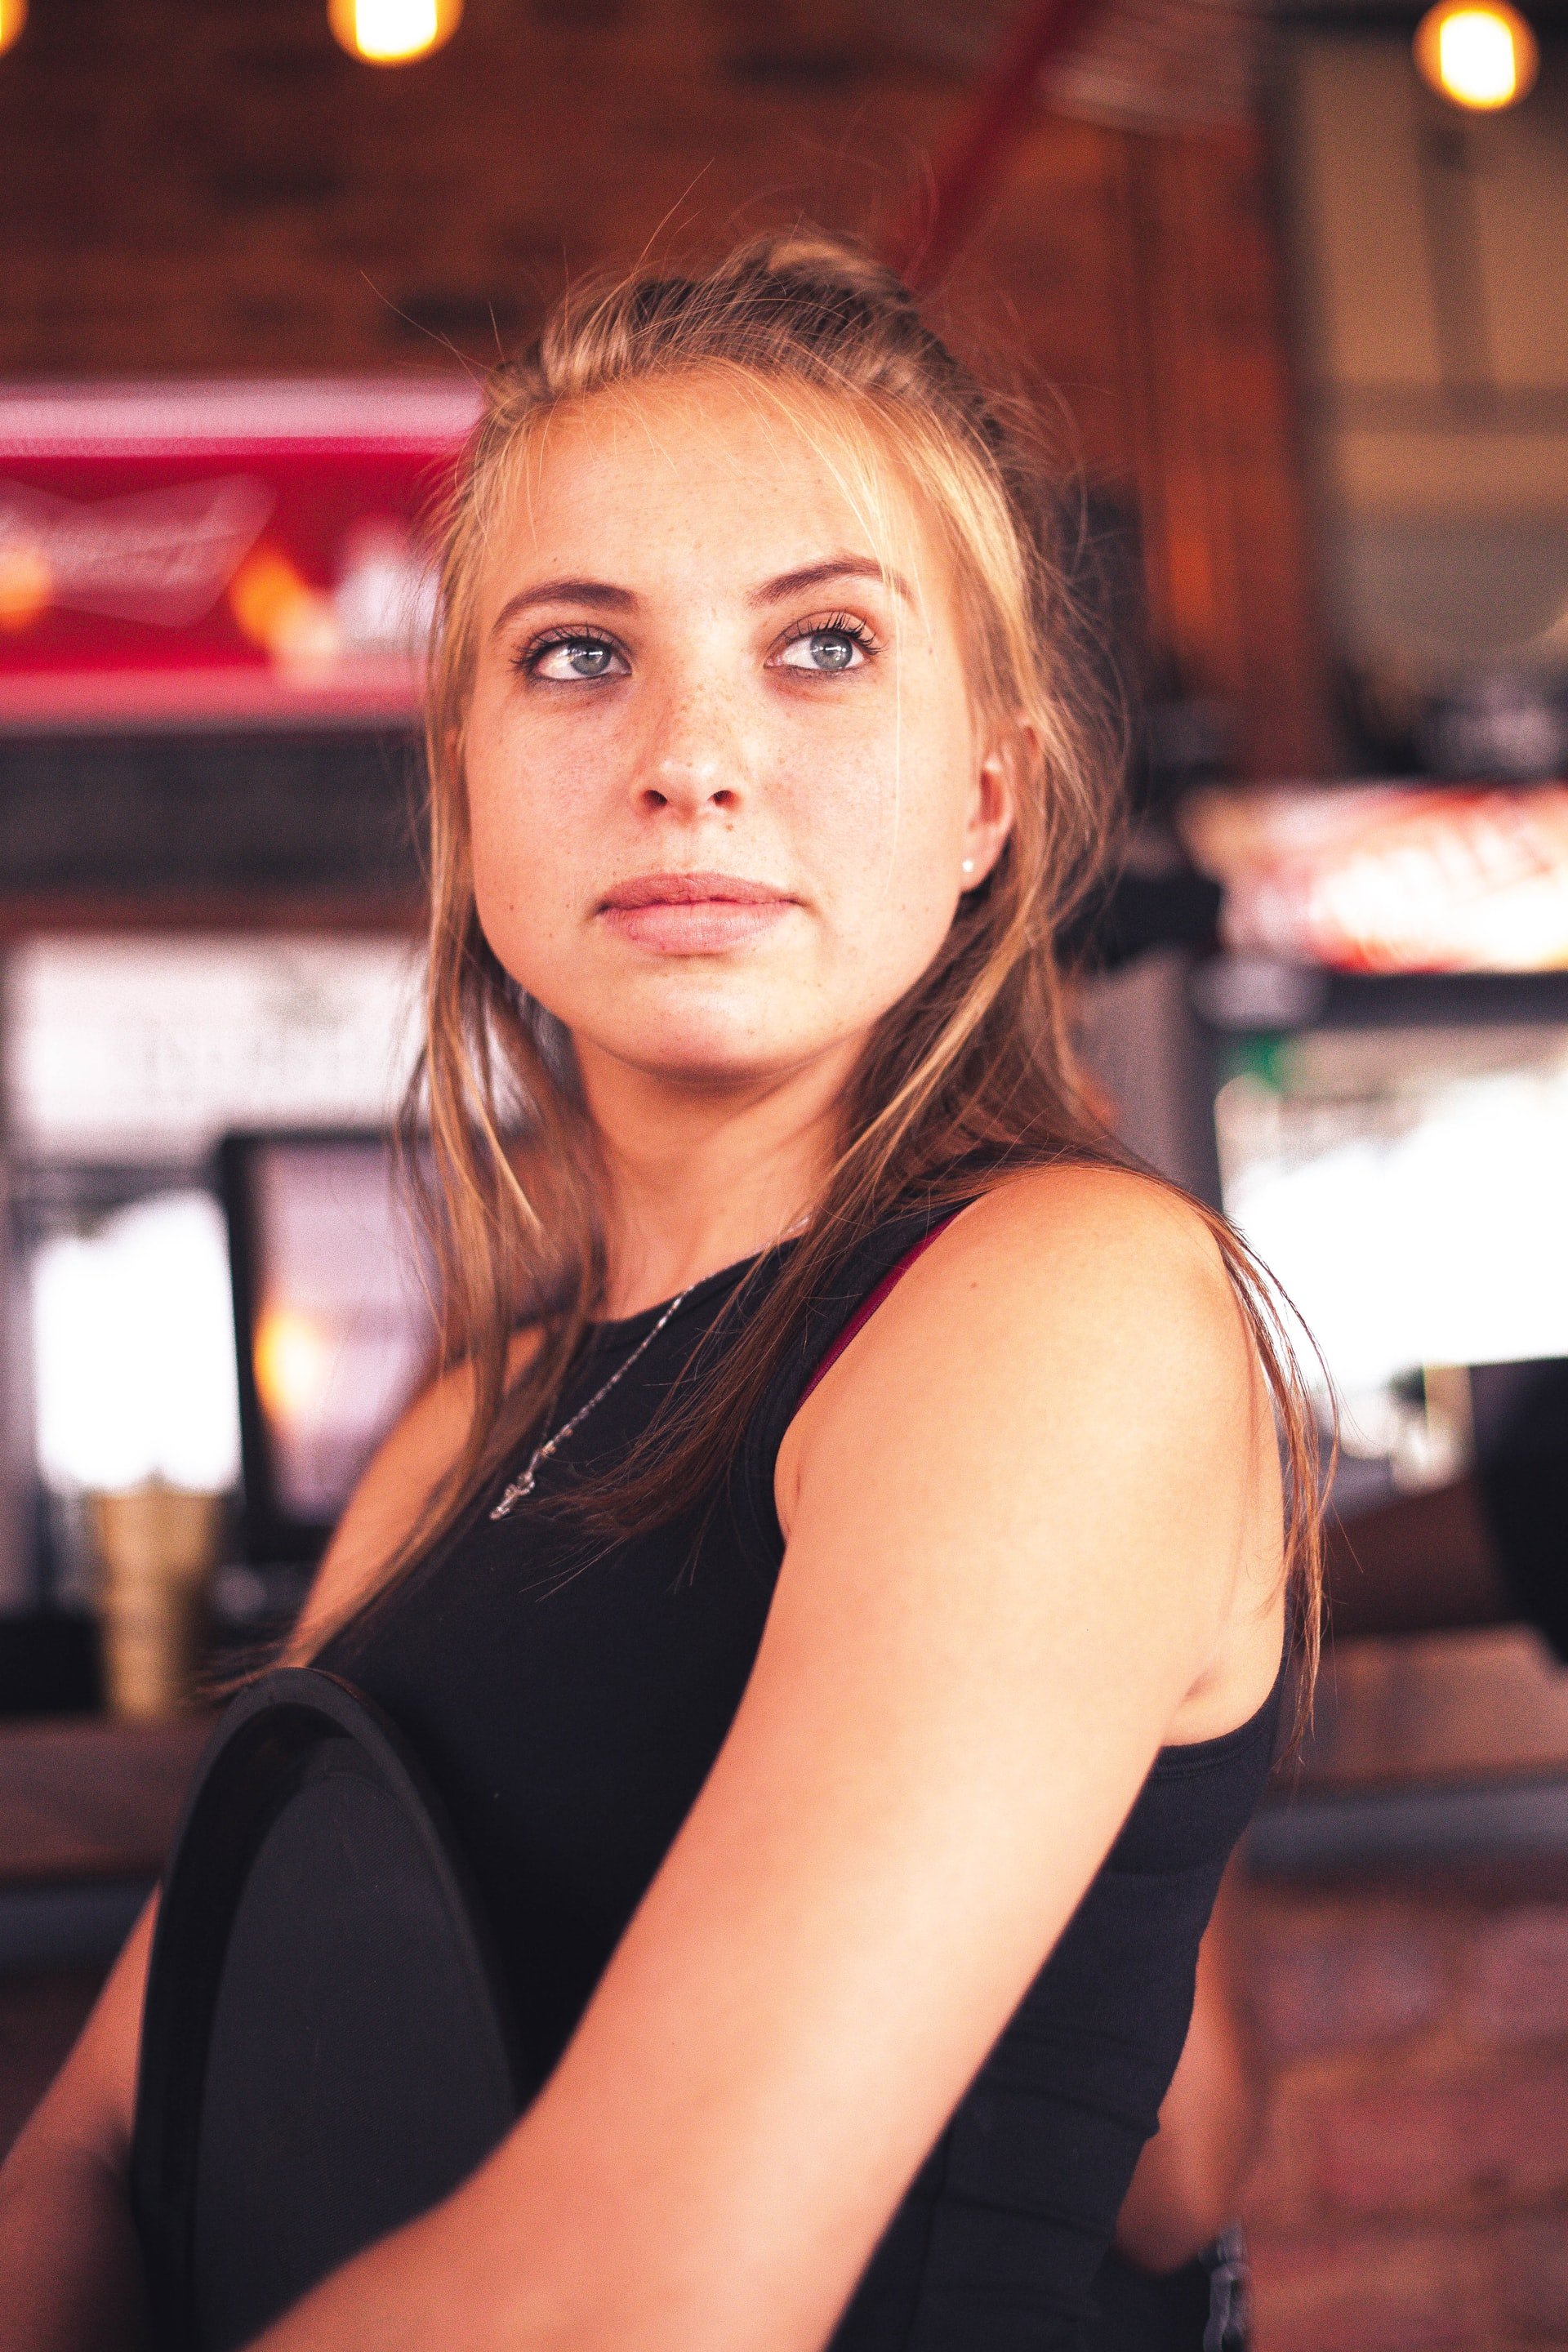 Jessica a déménagé à New York où elle a trouvé un emploi de serveuse dans un café | Source : Pexels